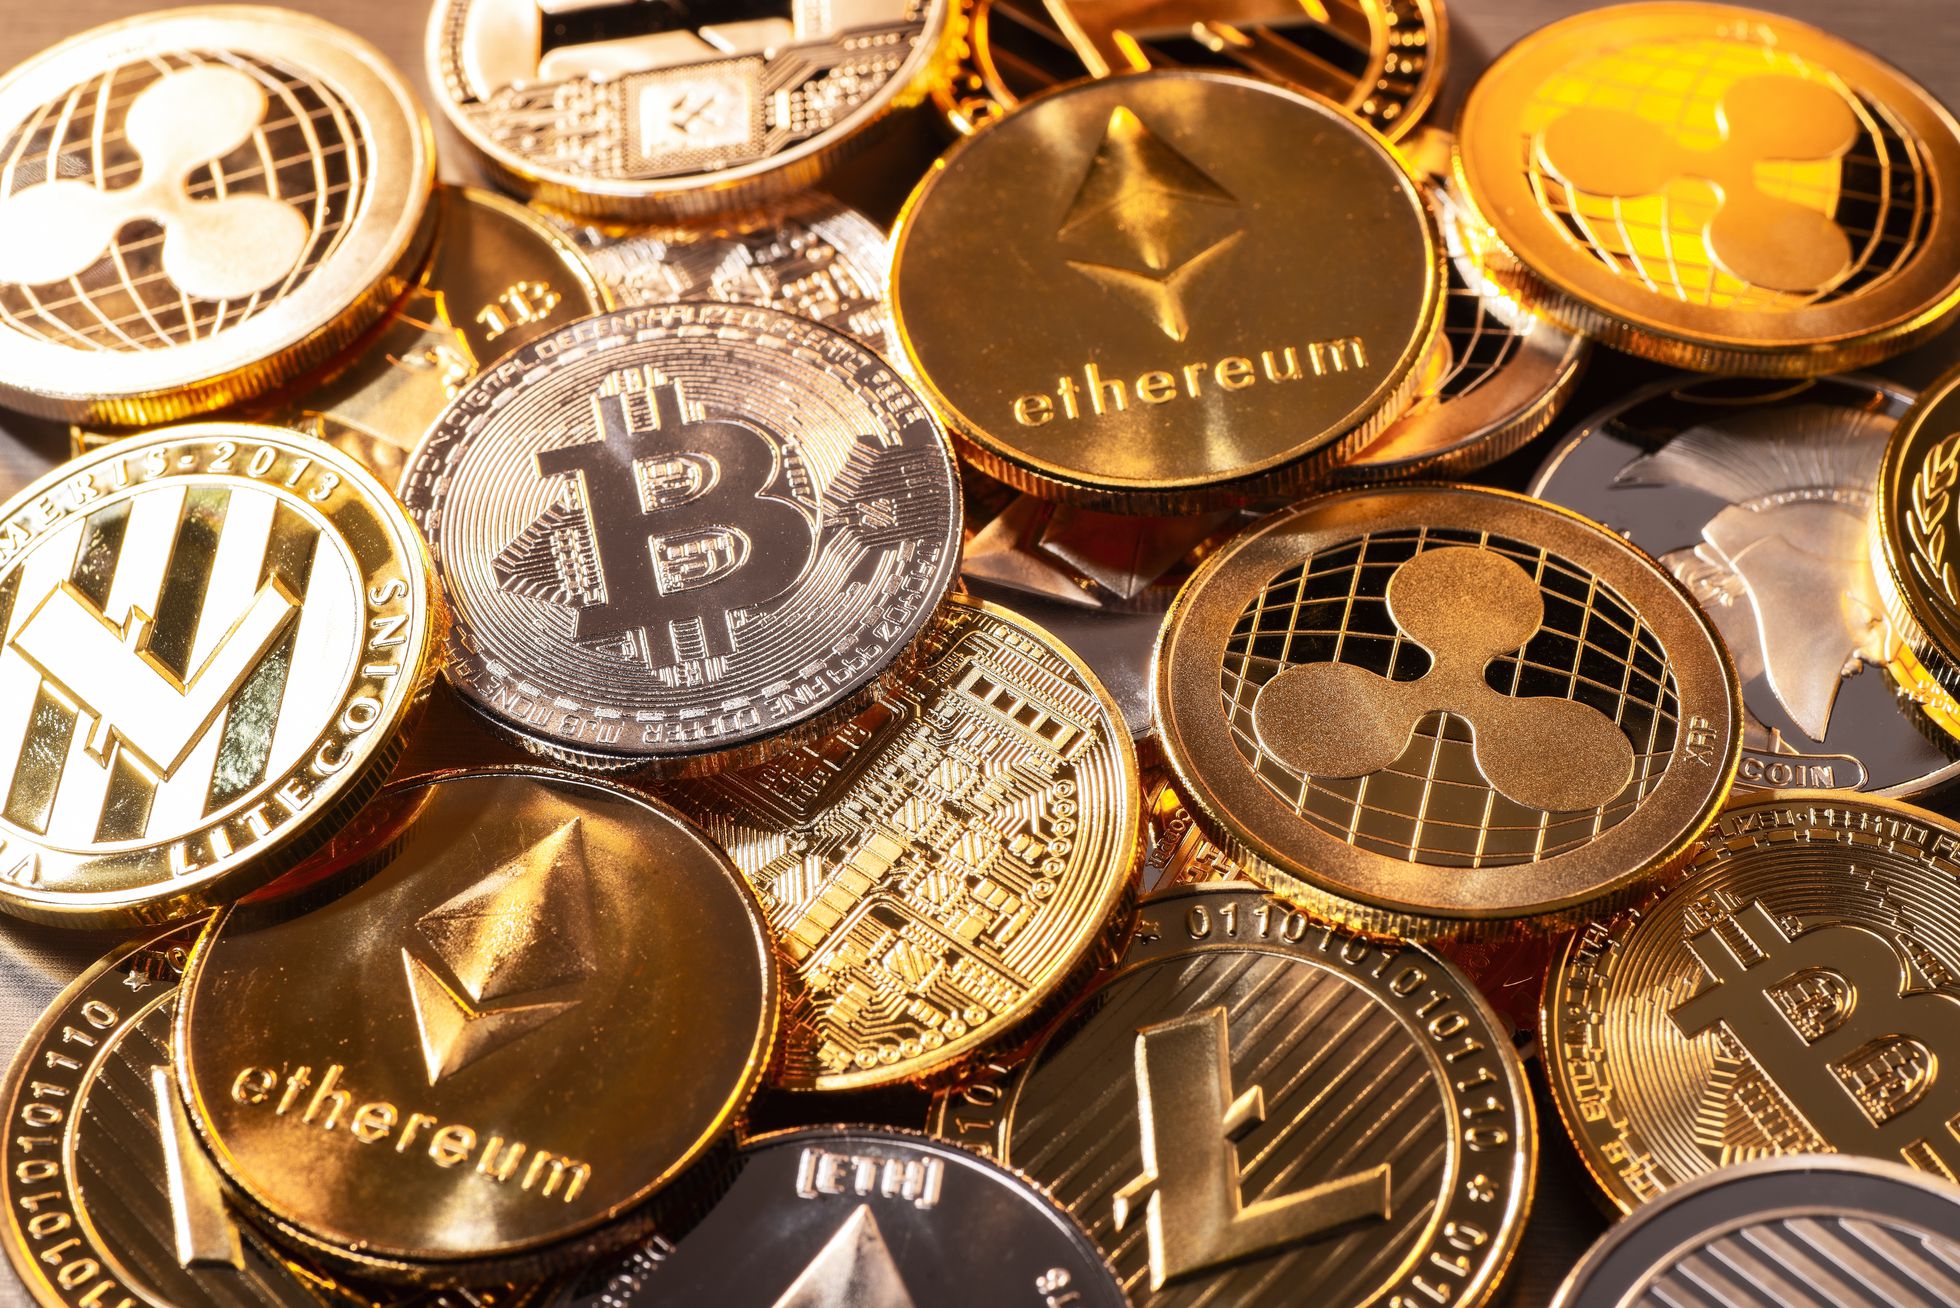 El bitcoin sigue siendo la referencia cripto, pero la diversidad de monedas lleva a que algunos usuarios puedan ser engañados.